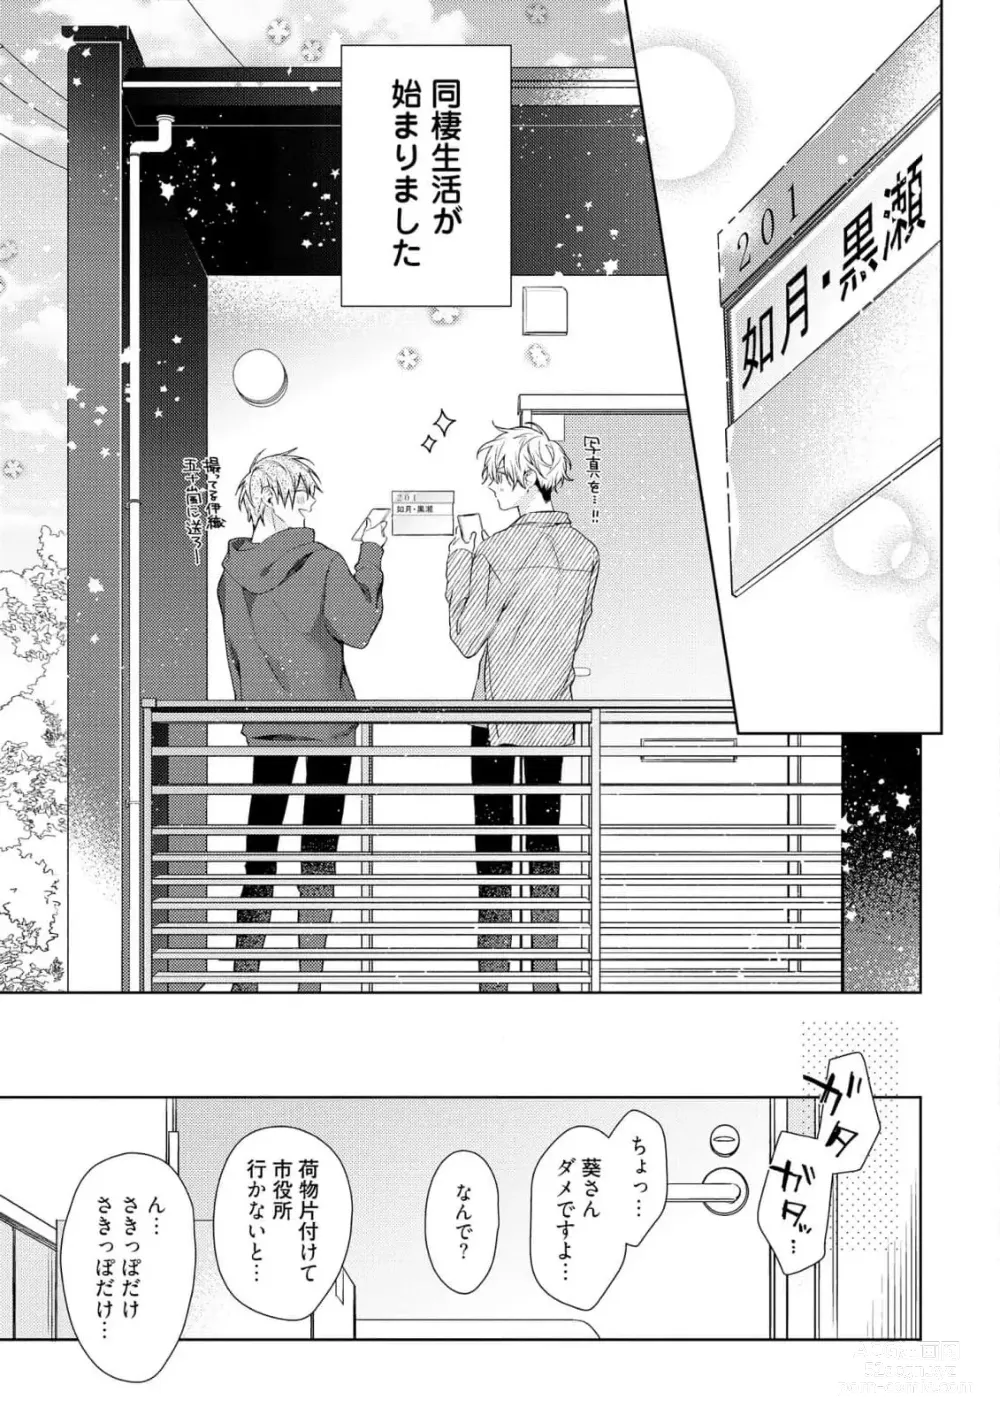 Page 7 of manga Motto! Ecchi wa shuu 7 Kibou Desu!